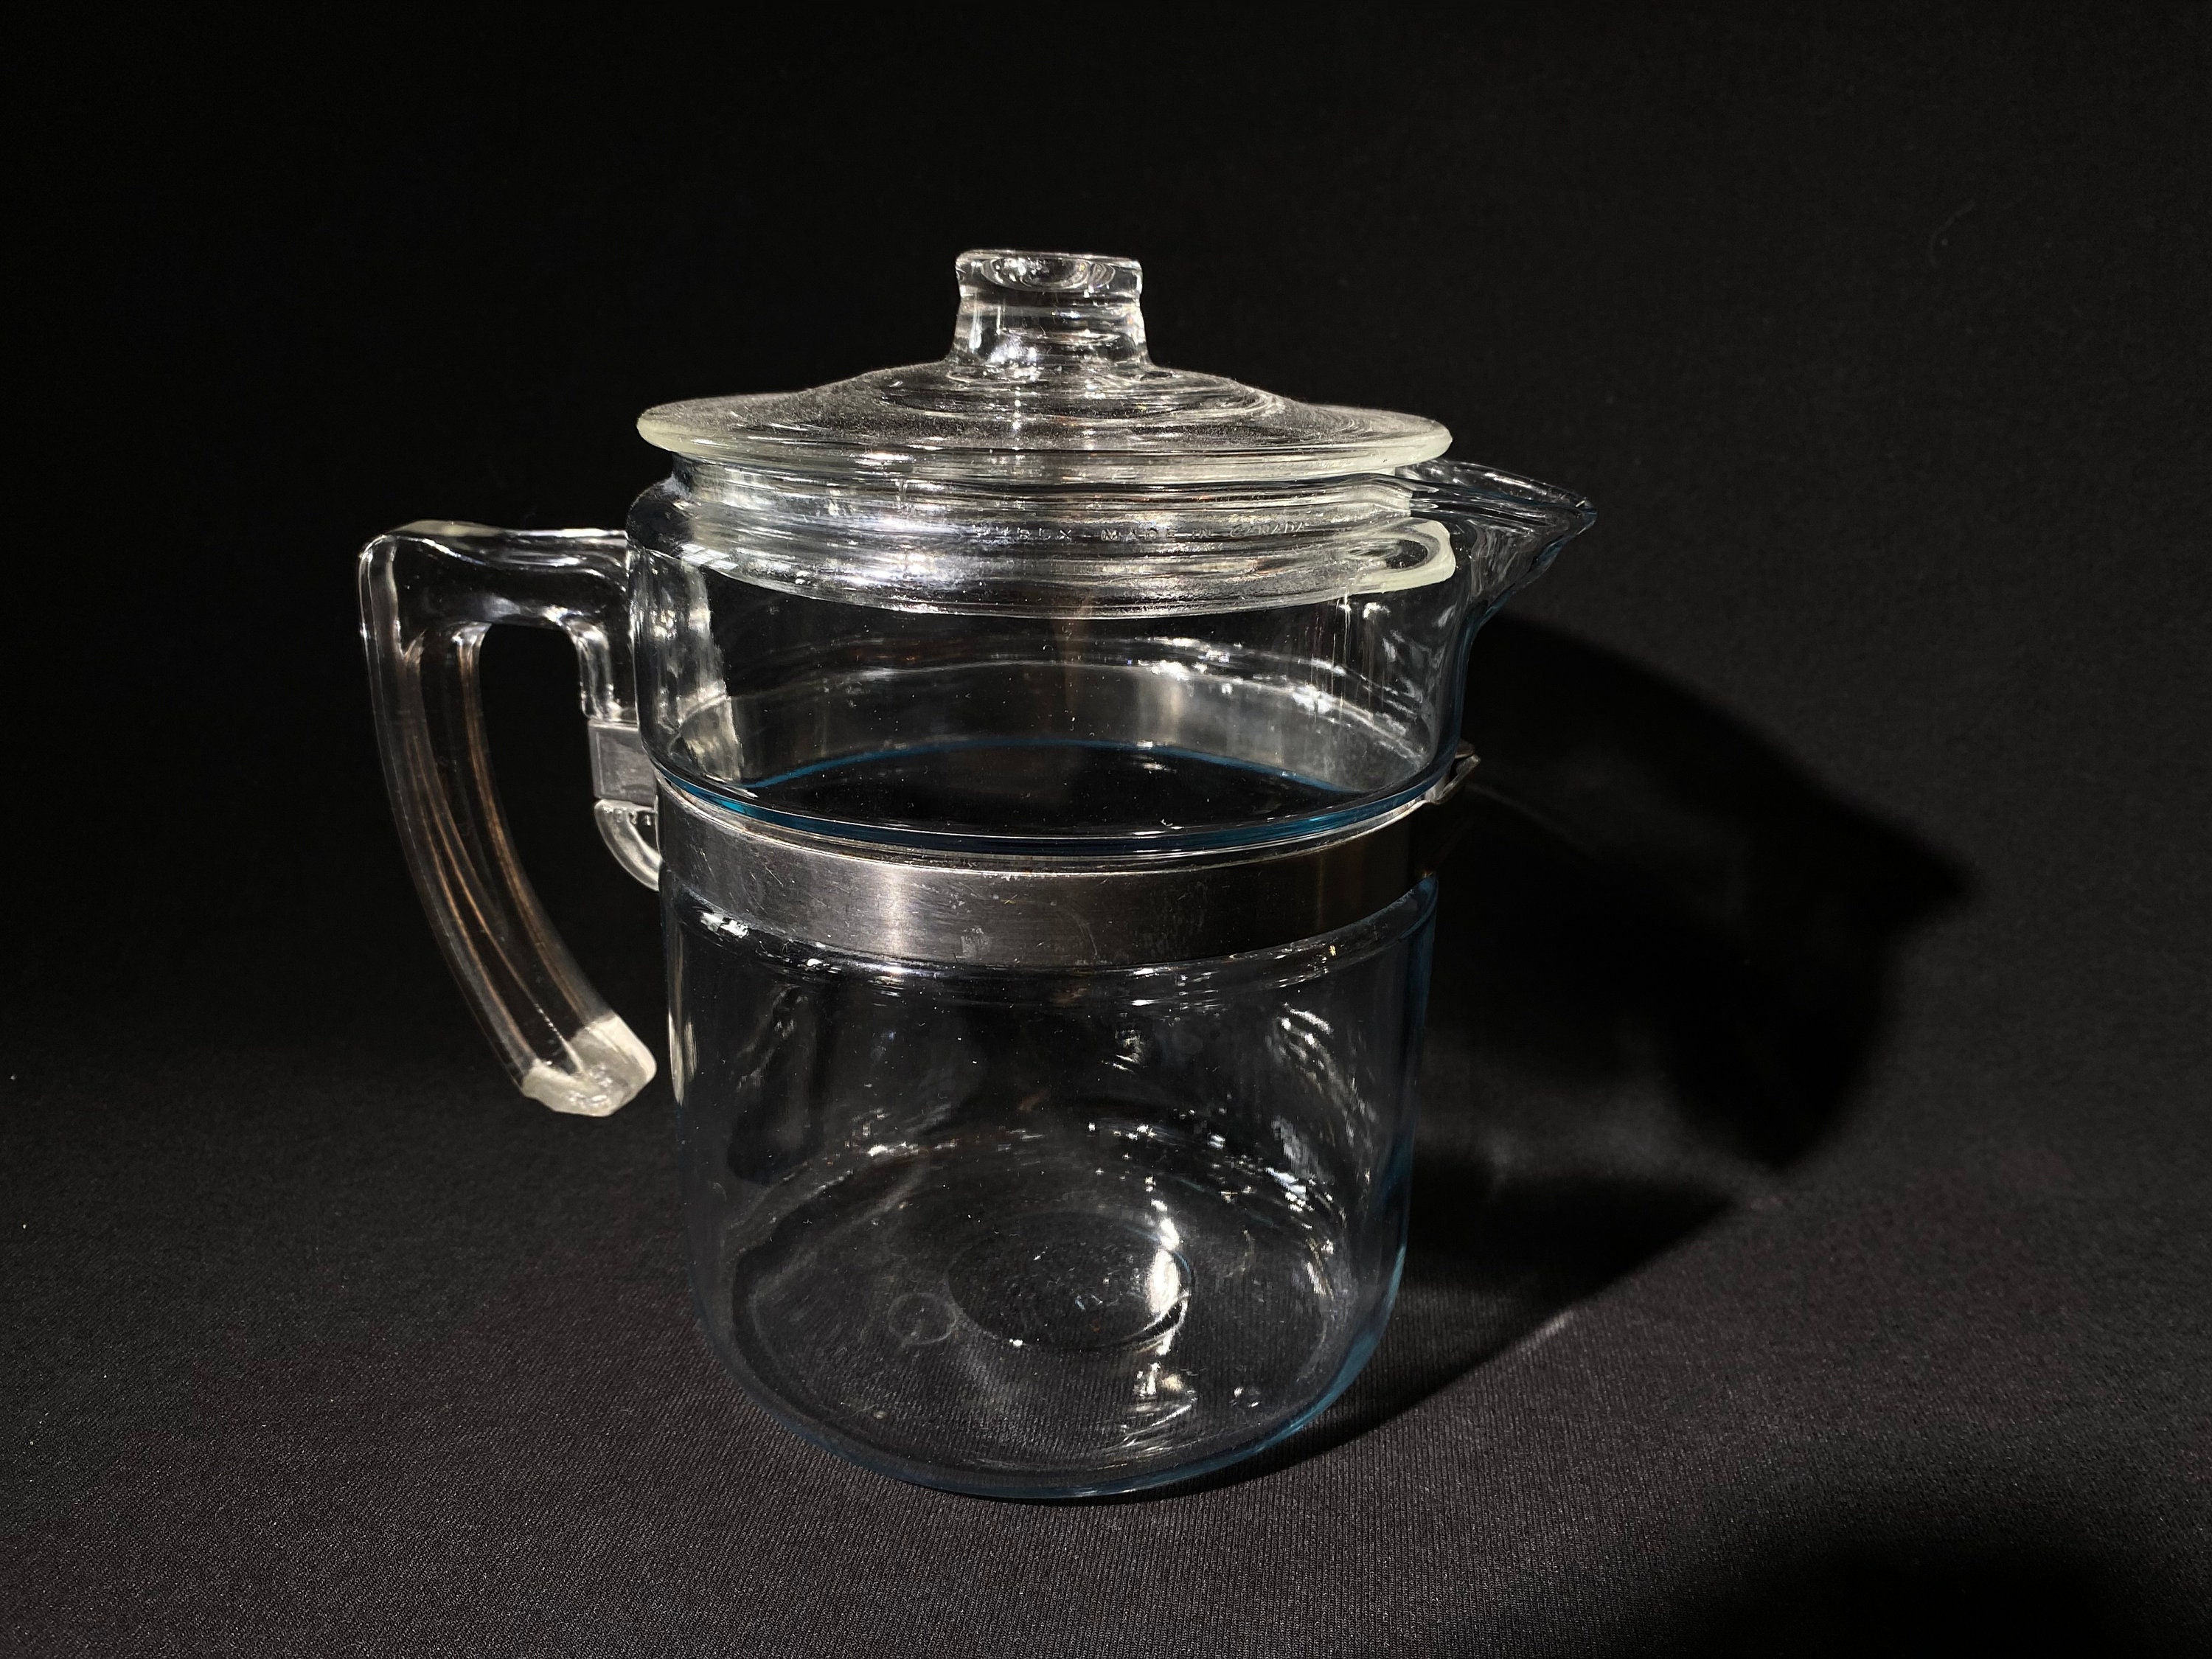 Vintage Blue Pyrex Flameware Pots Set of Four 4 Detachable Handles Clear  Handles 